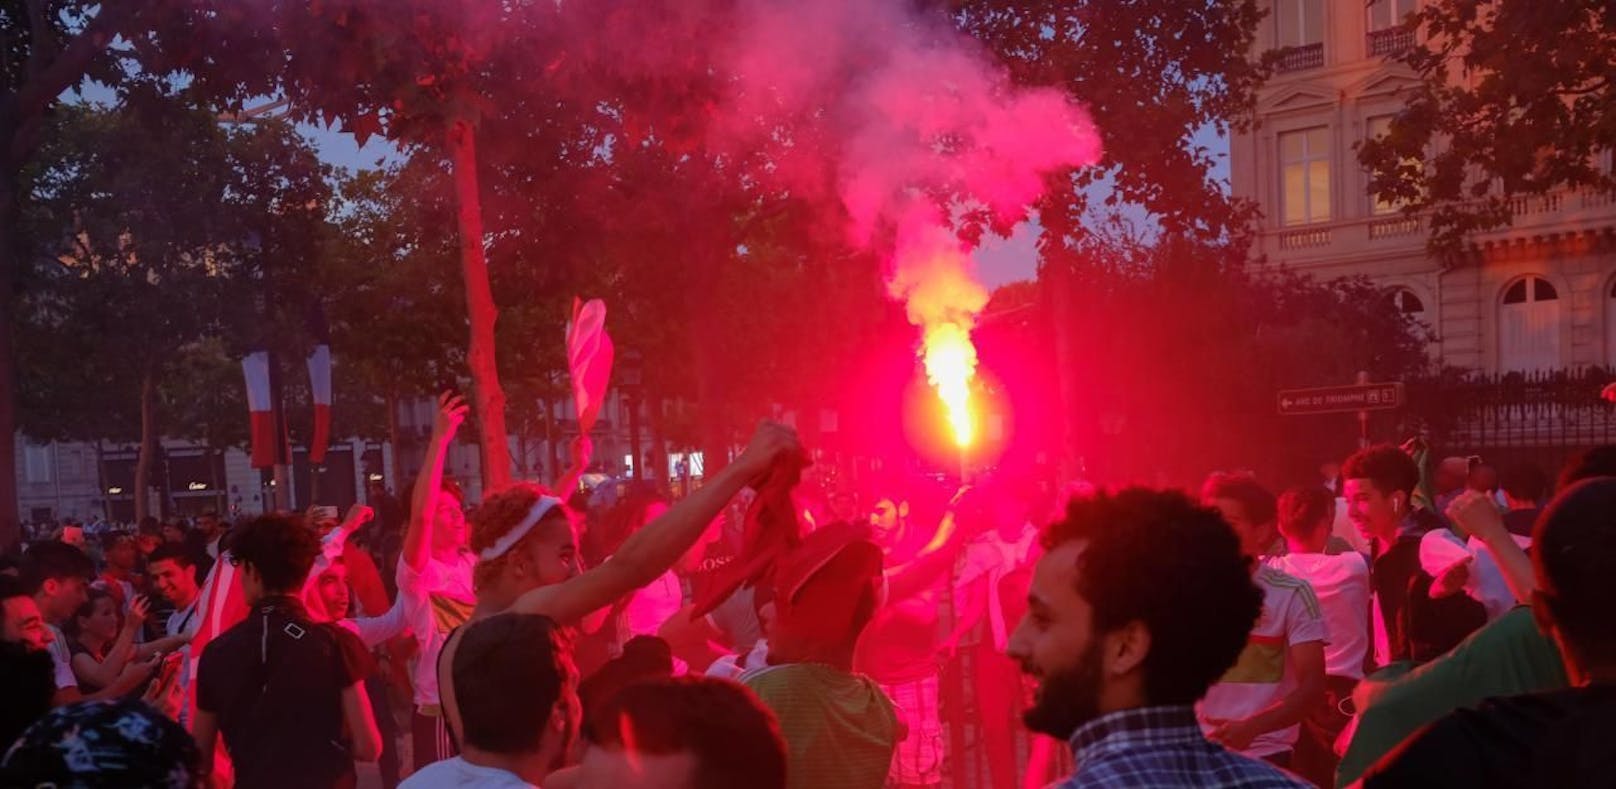 Algerien-Fans feierten den Aufstieg ihrer Mannschaft zu sehr. Eine Frau kam ums Leben.